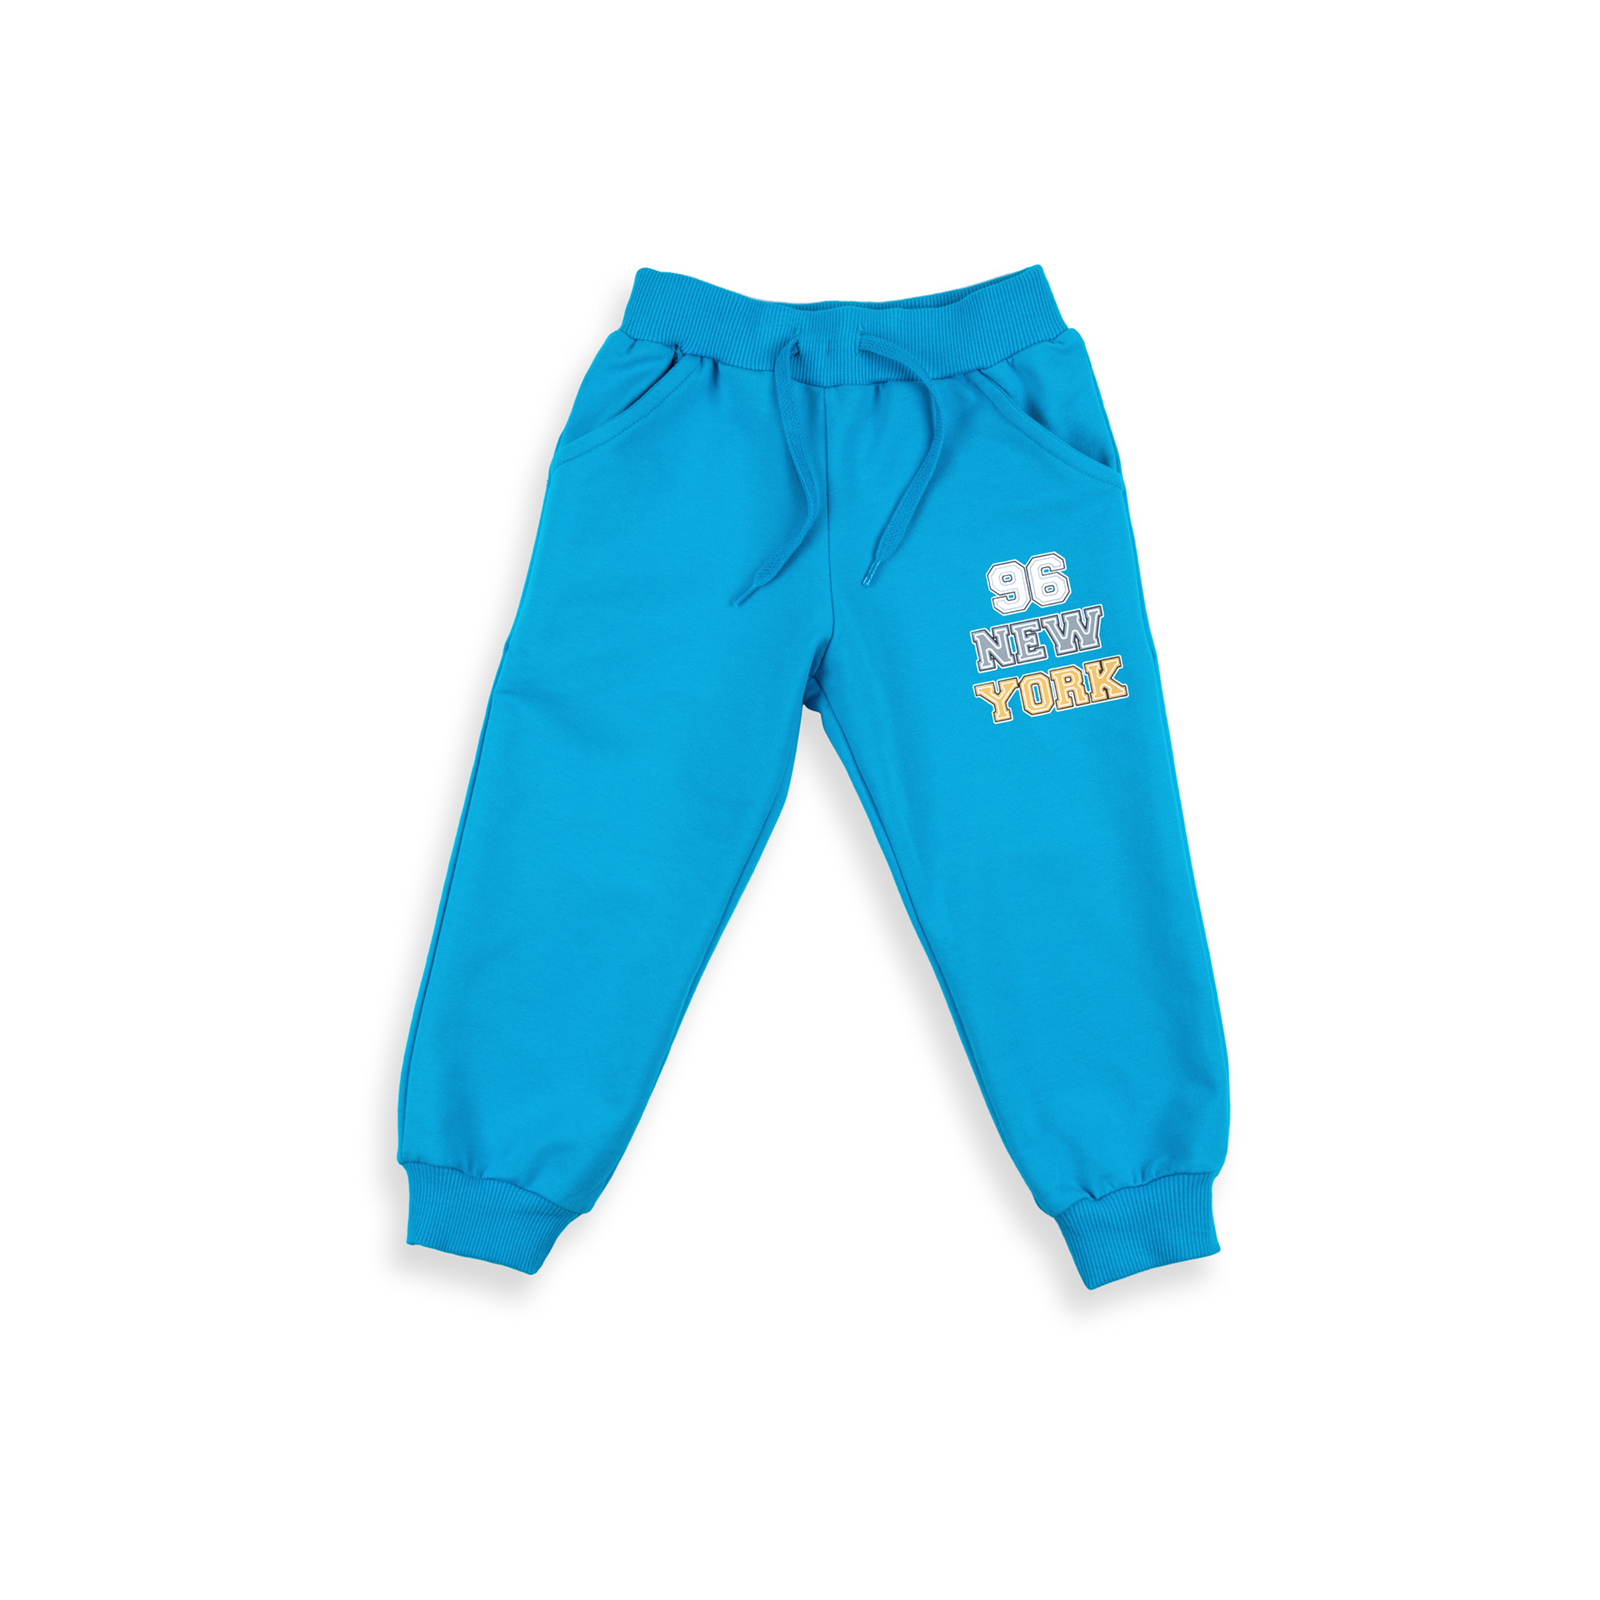 Набор детской одежды Breeze "I RUN NEW YORK" (8278-116B-blue) изображение 3